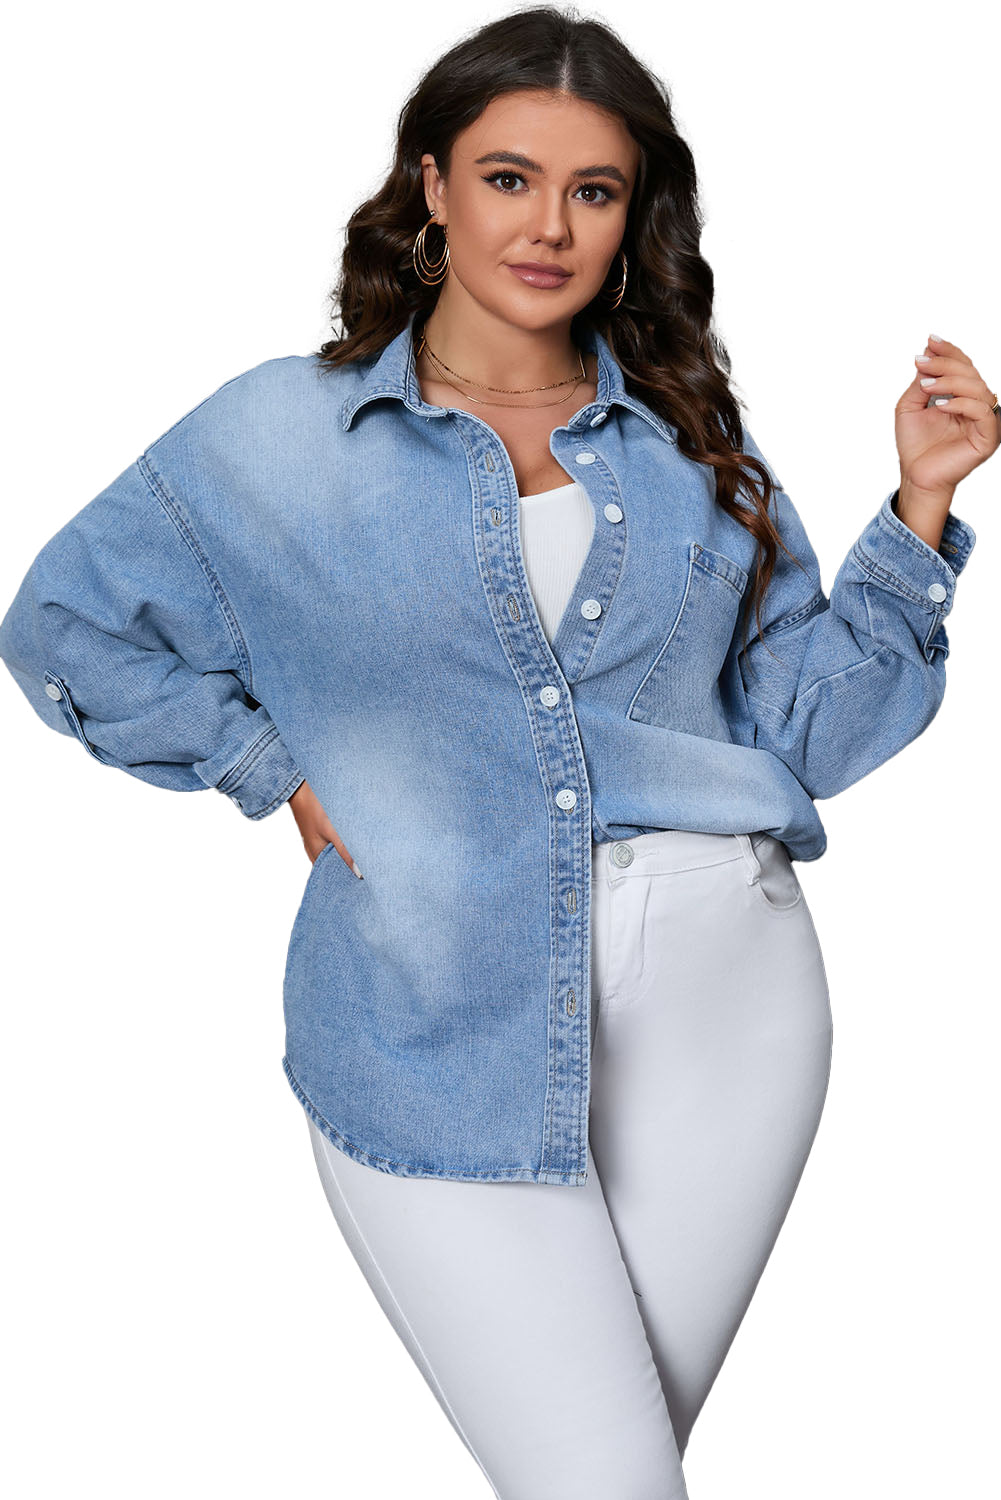 Veste en jean boutonnée avec poche poitrine de grande taille bleu ciel